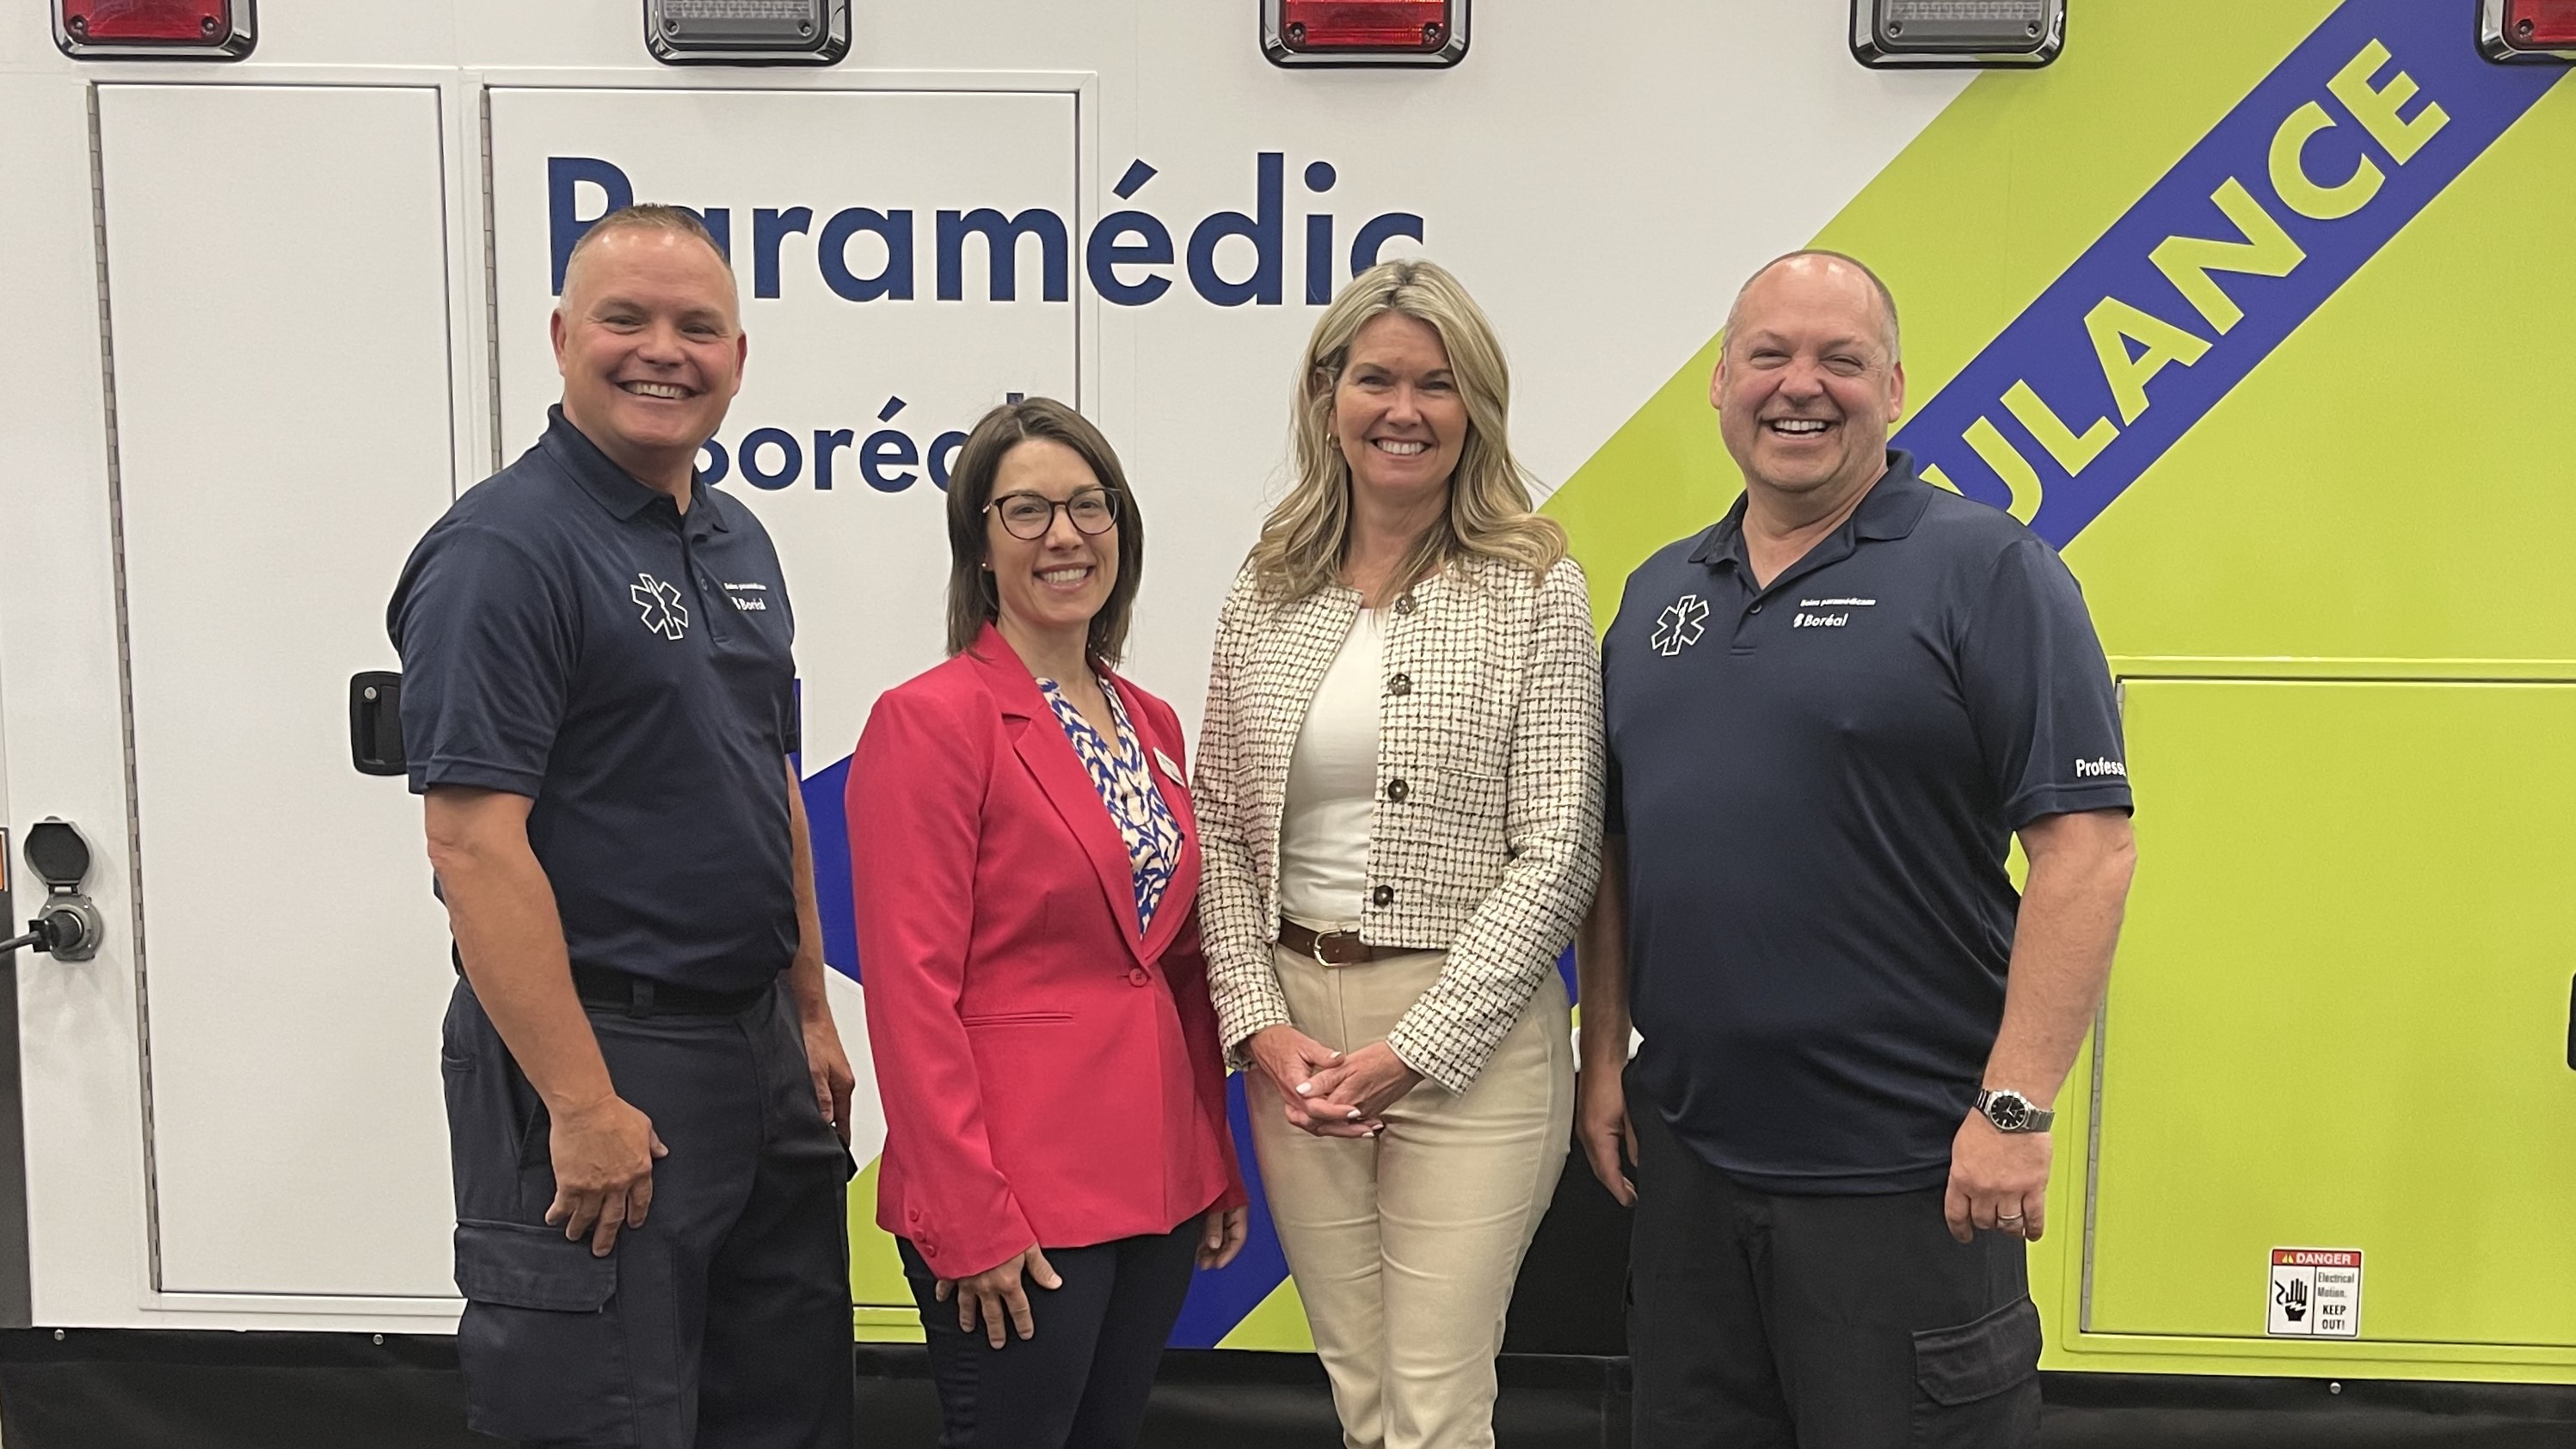 Le programme de soins paramédicaux du Collège Boréal acquiert un nouveau simulateur d’ambulance unique en Ontario